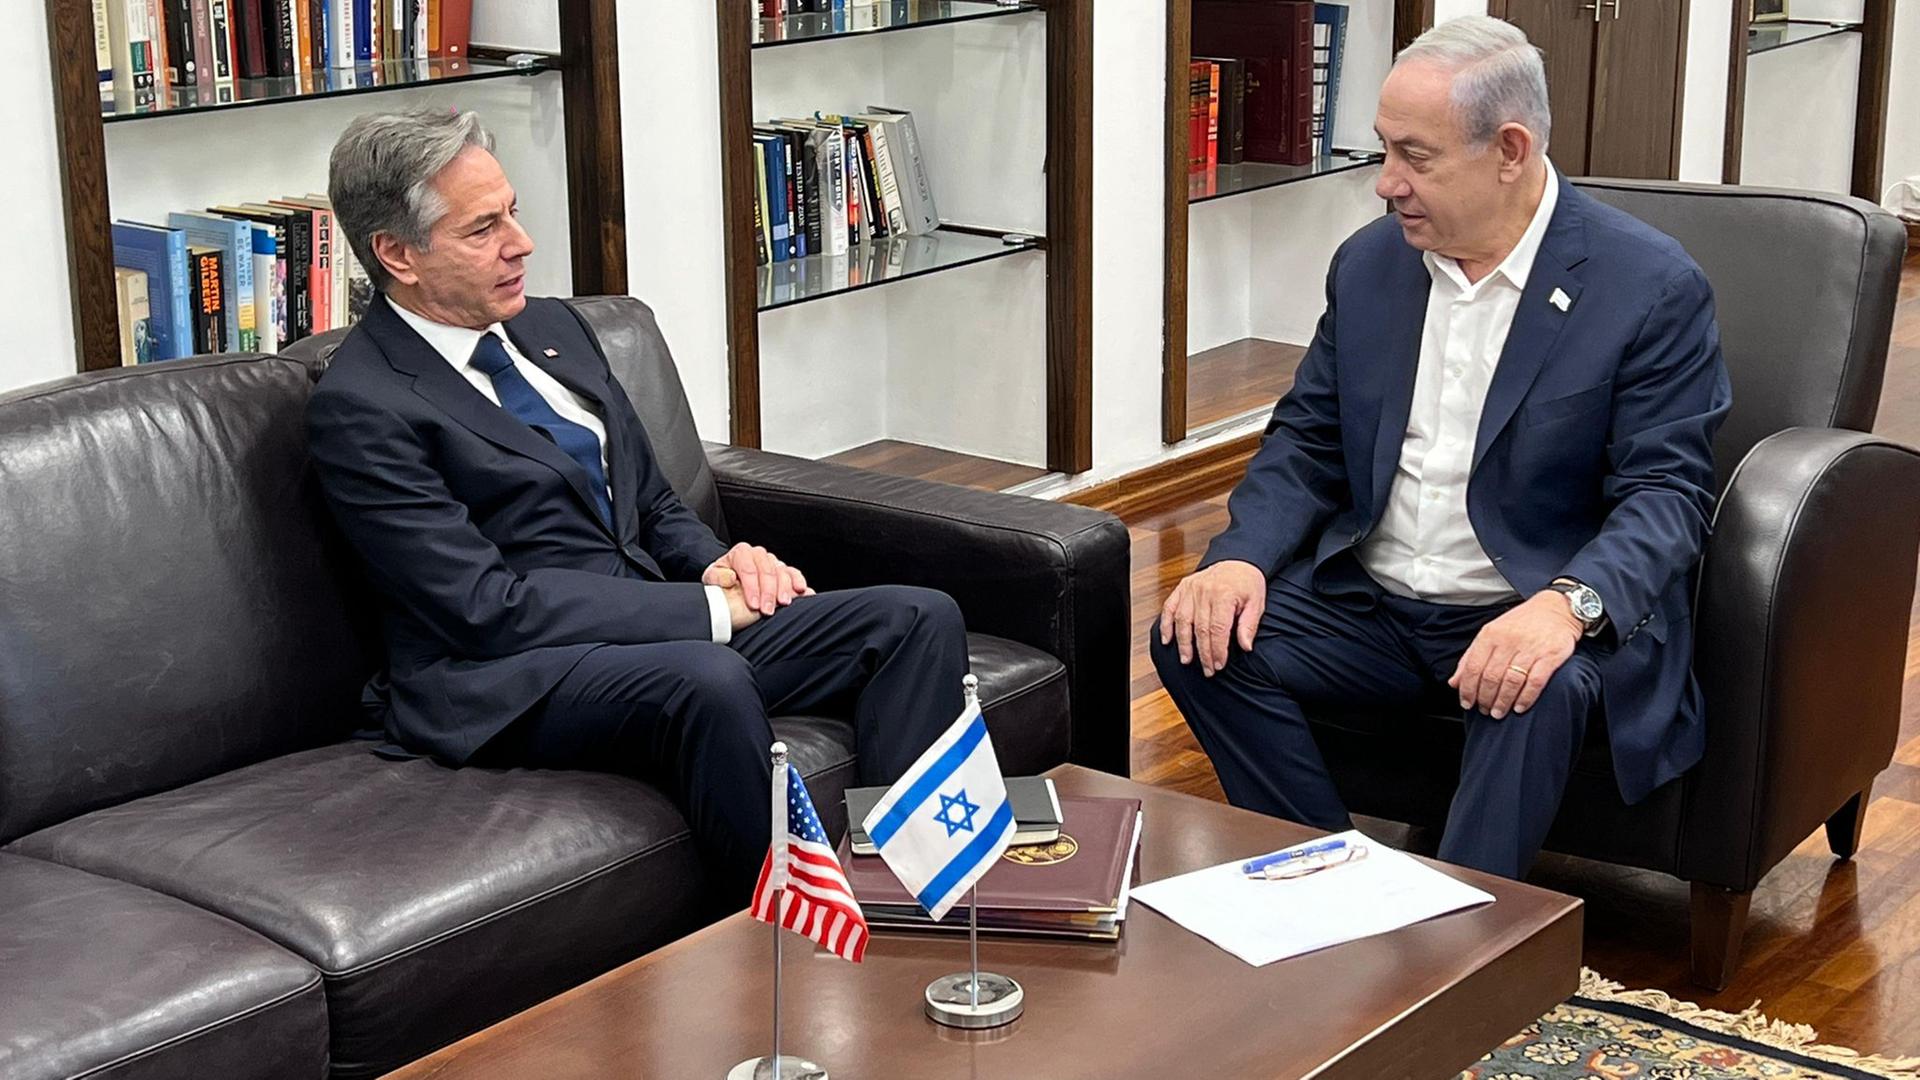 Das Foto zeigt US-Außenminister Blinken und den israelischen Ministerpräsidenten Netanjahu. Die Politiker sitzen an einem Tisch, auf dem die Flaggen Israels und der USA aufgestellt wurden.